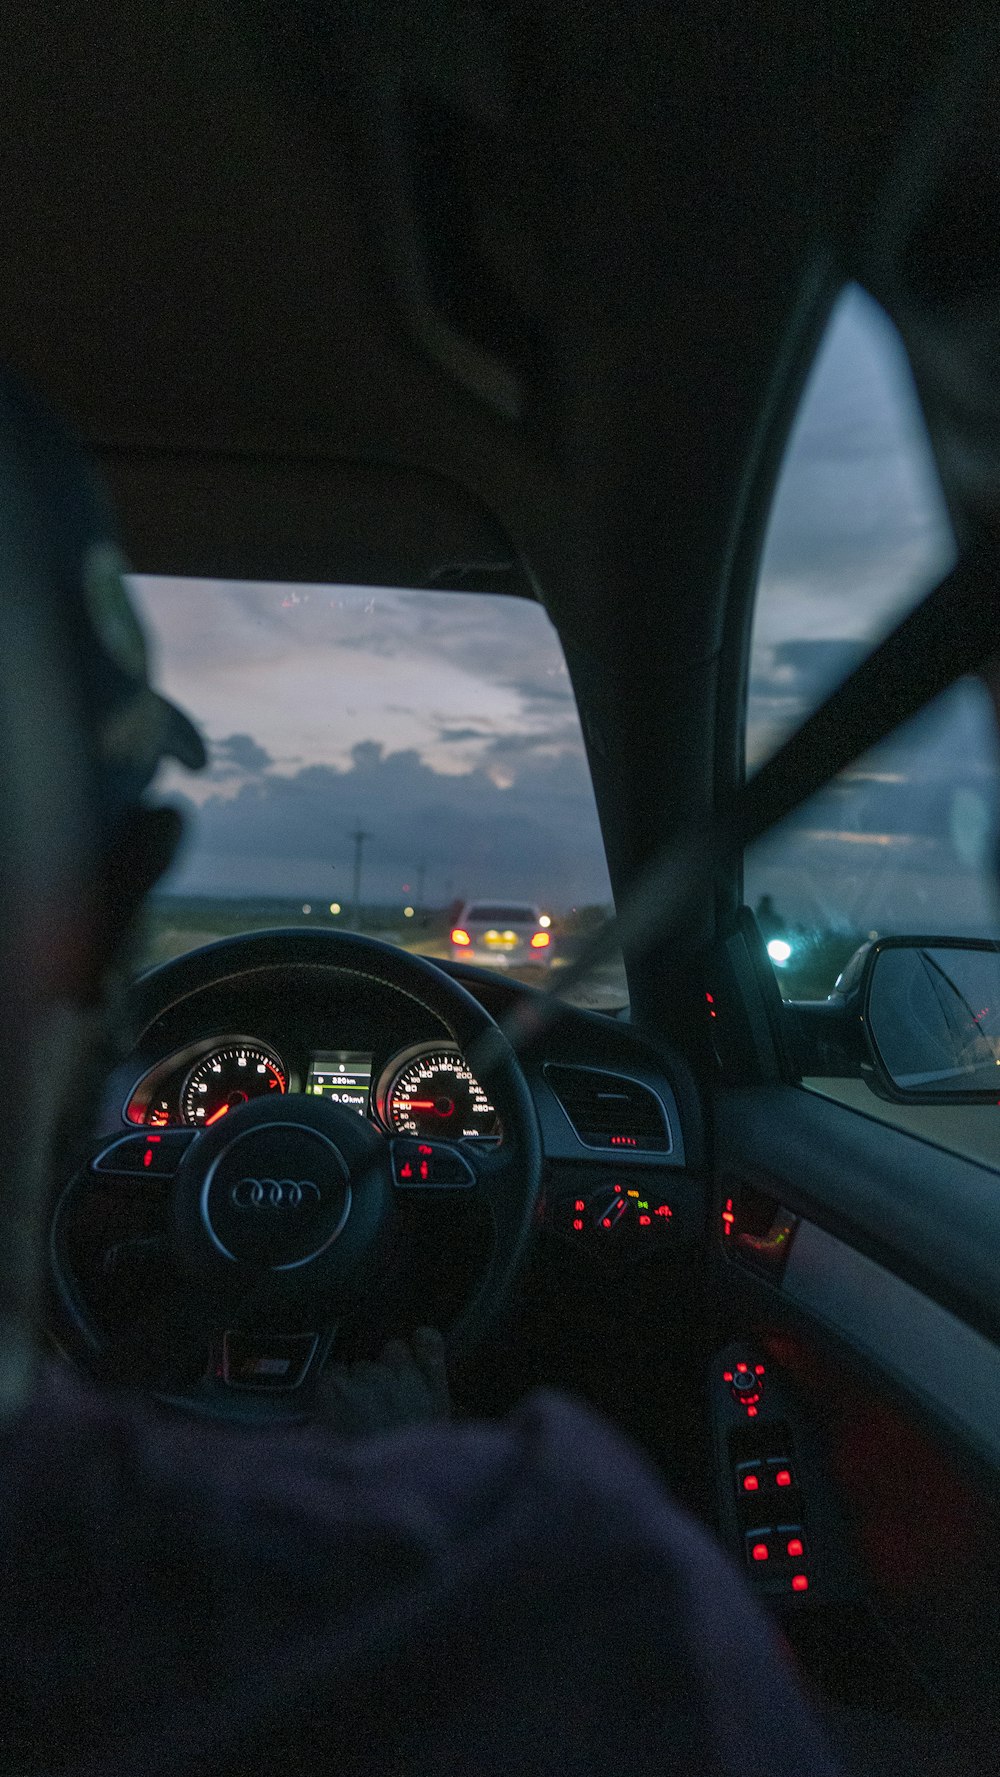 une vue du tableau de bord d’une voiture la nuit